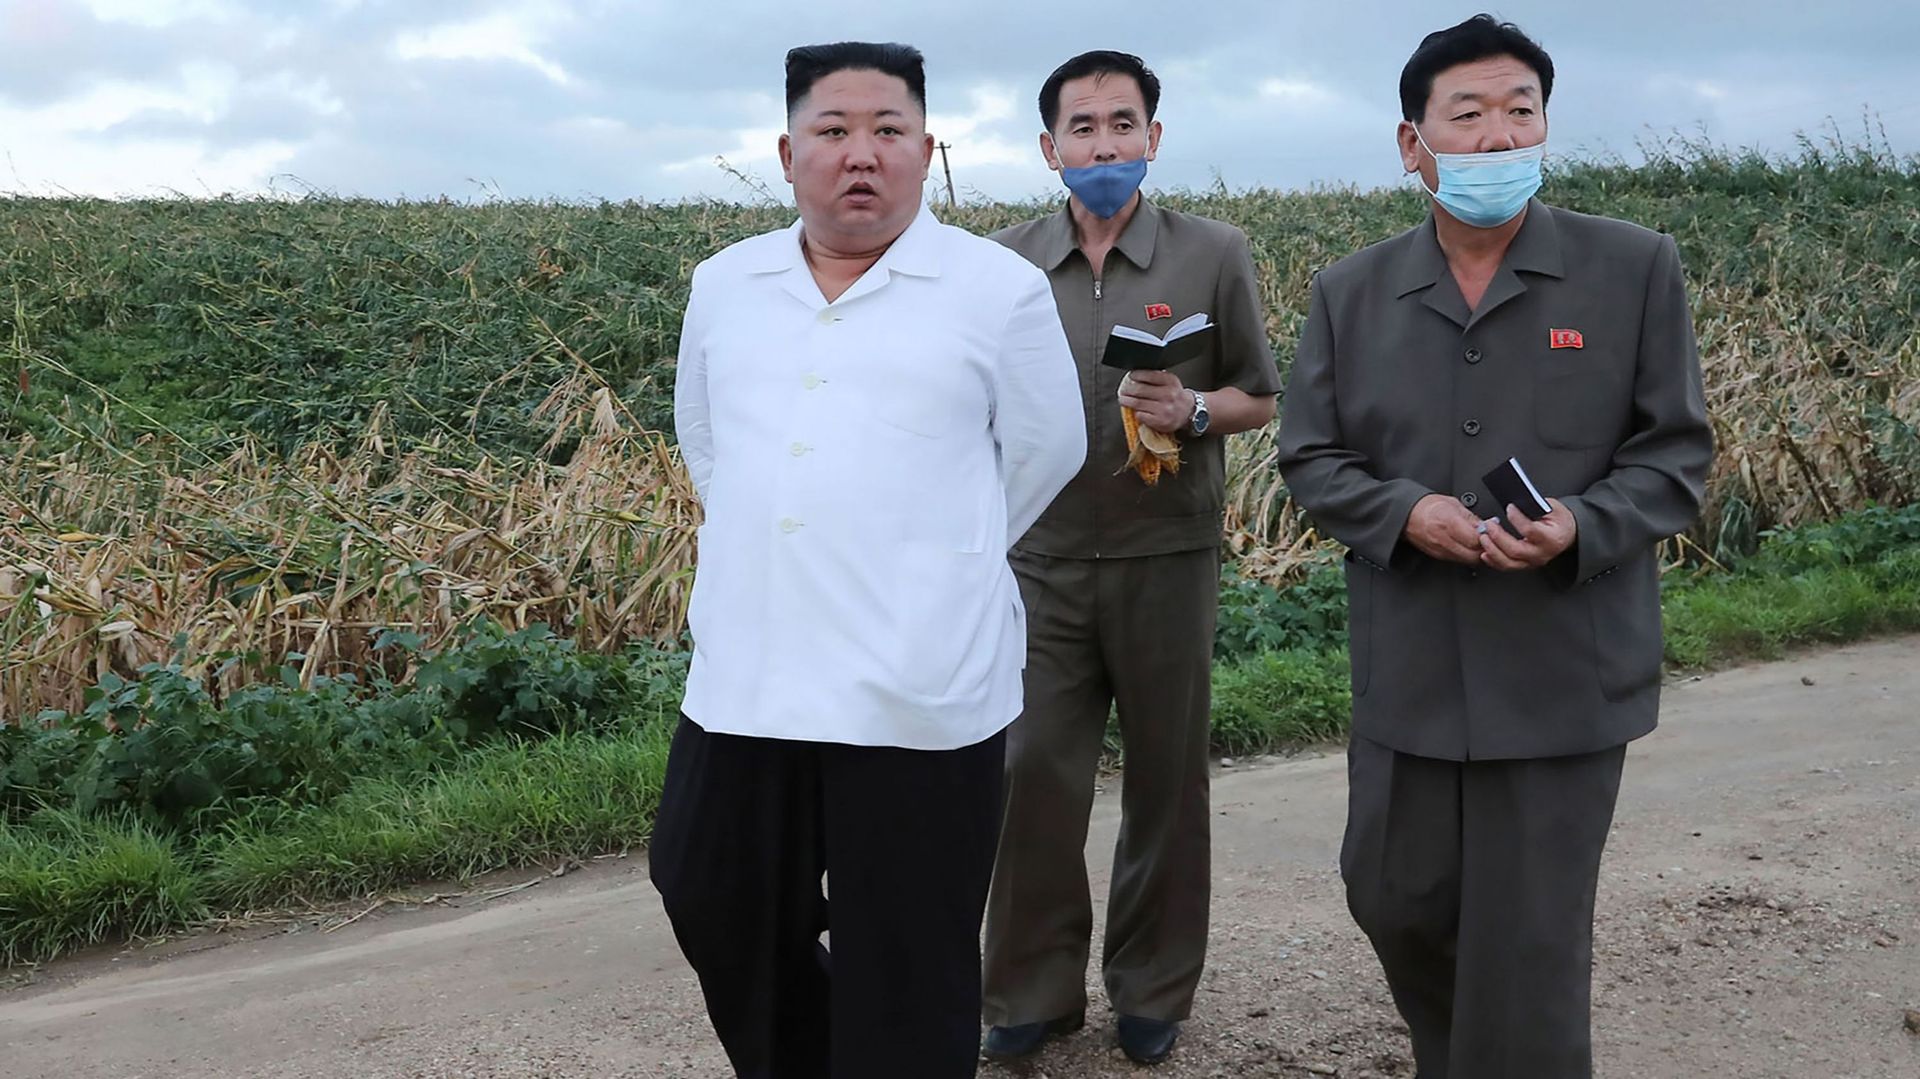 Kim Jong Un présente ses excuses après le meurtre d’un Sud-Coréen